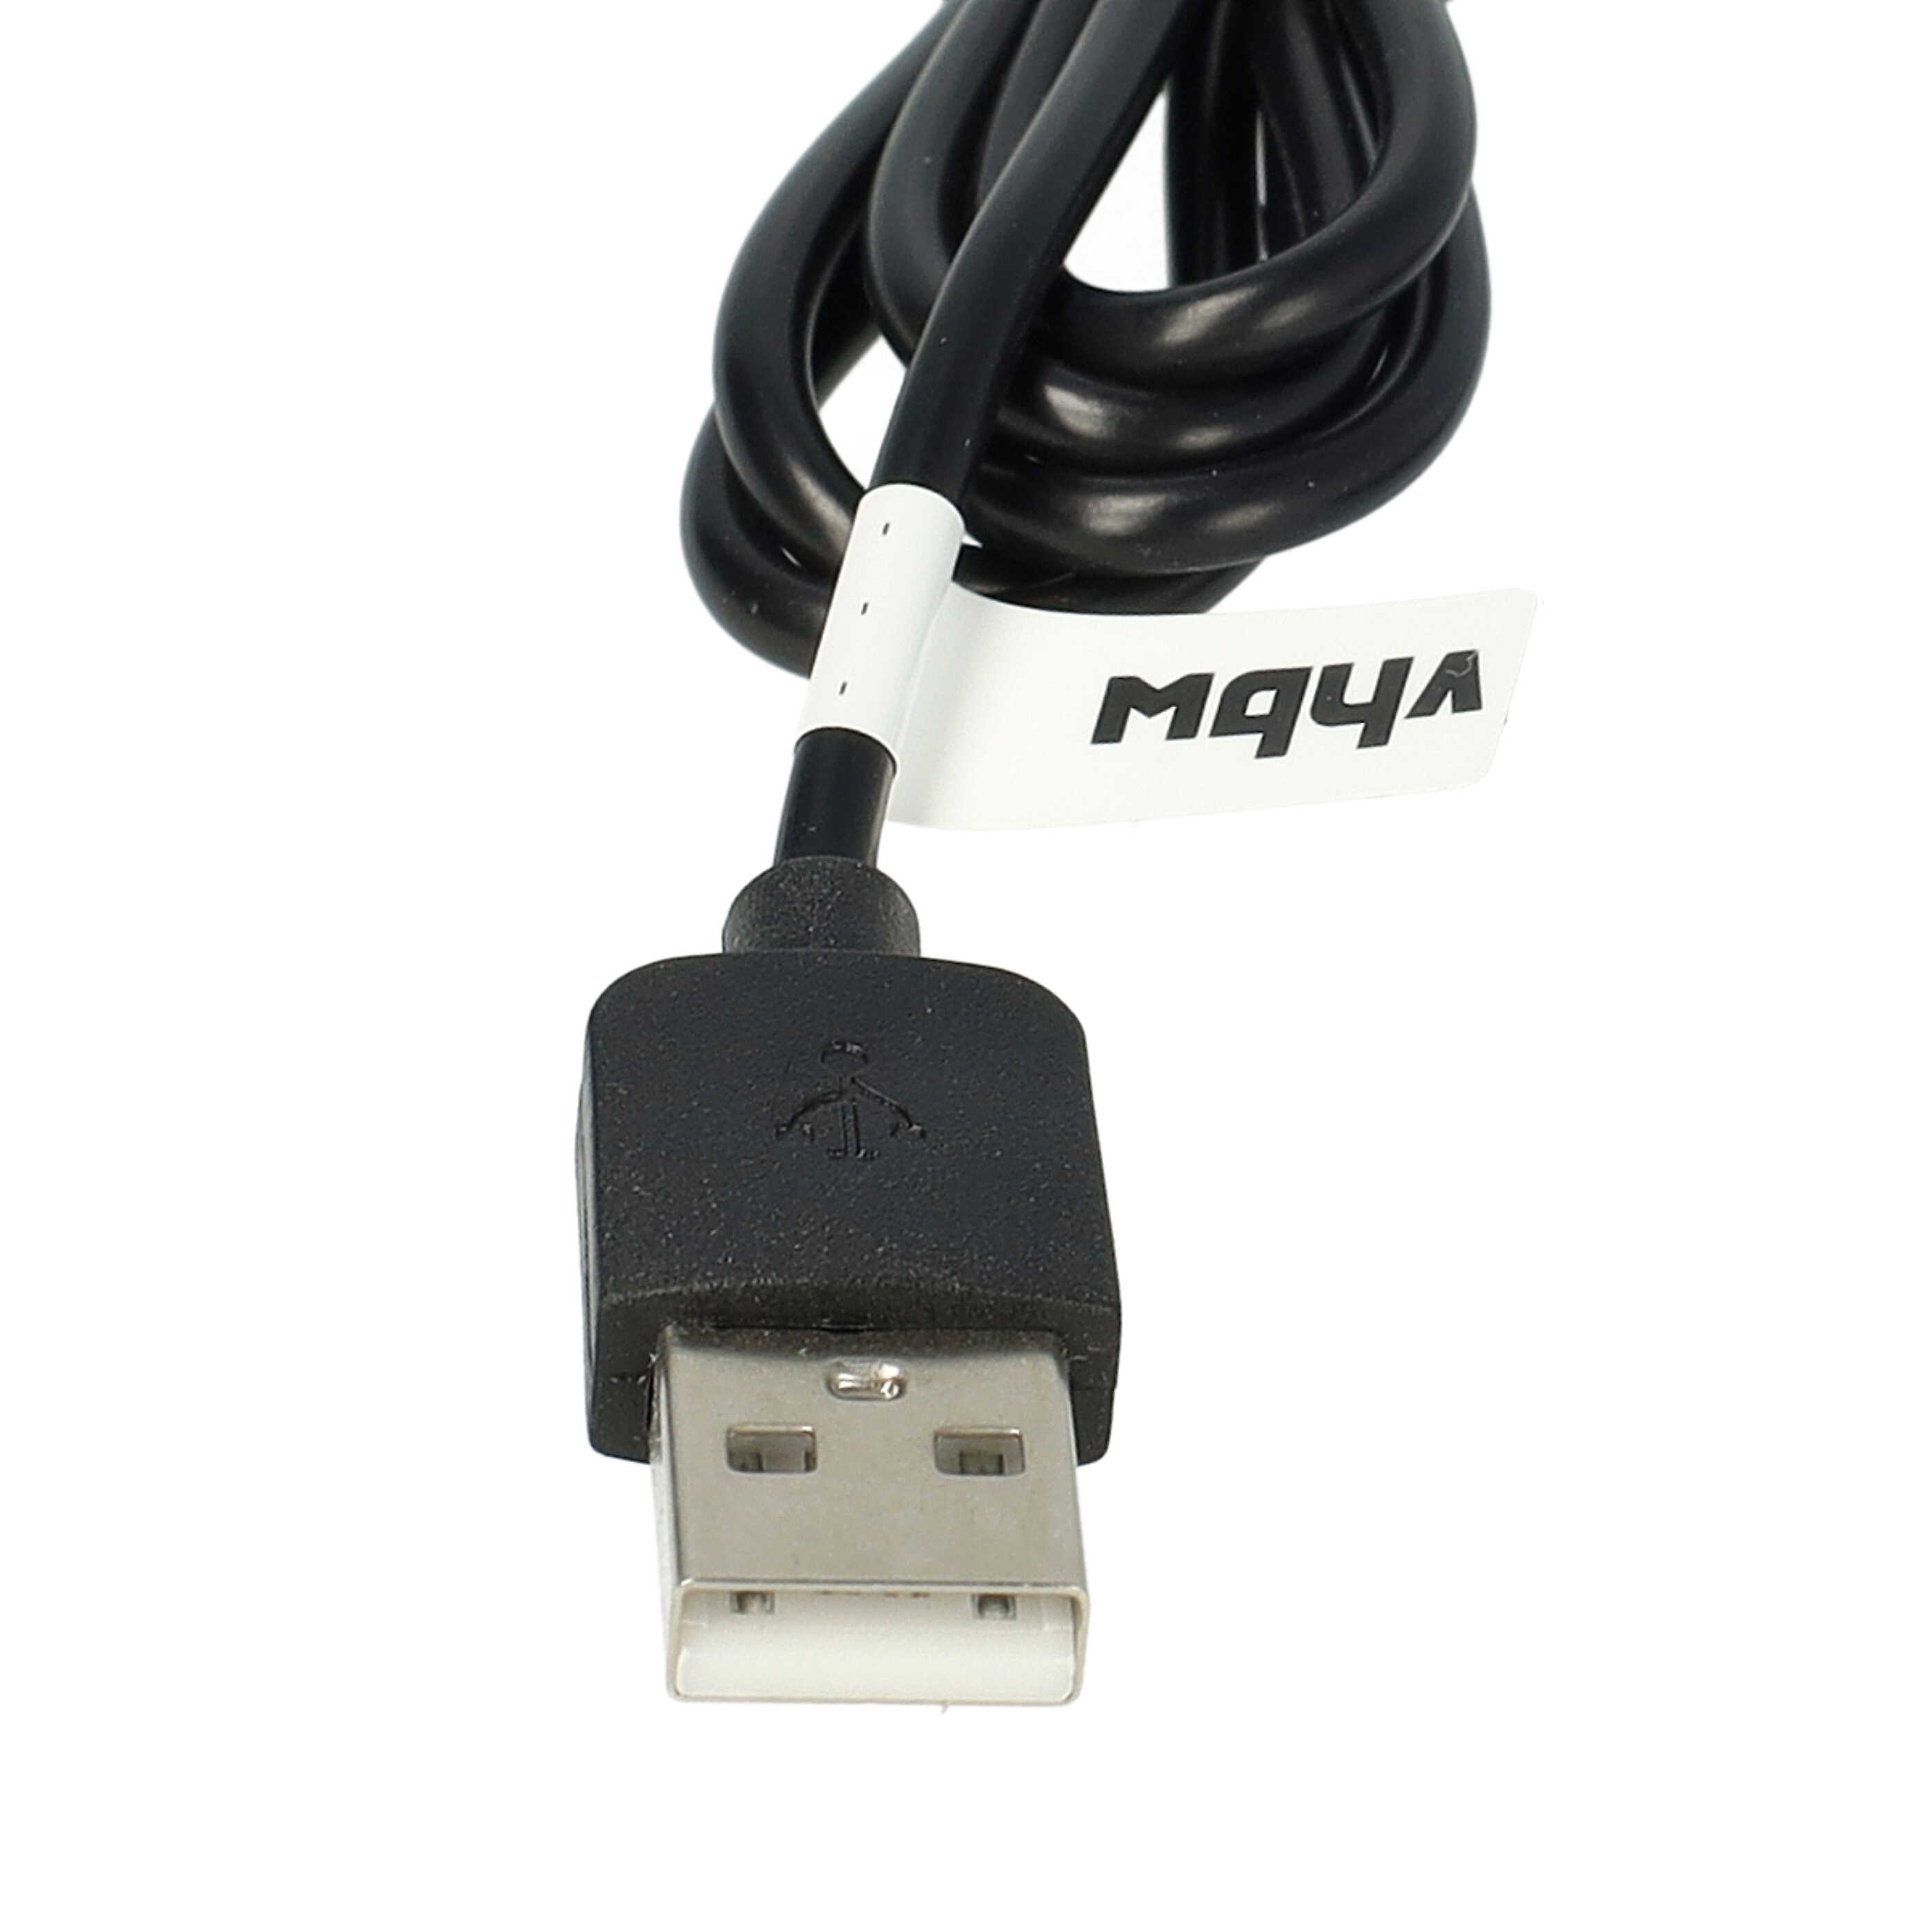 USB Ladekabel als Ersatz für Panasonic RE7-59, RE7-68, RE7-51, RE7-40 für Panasonic Rasierer - 120 cm